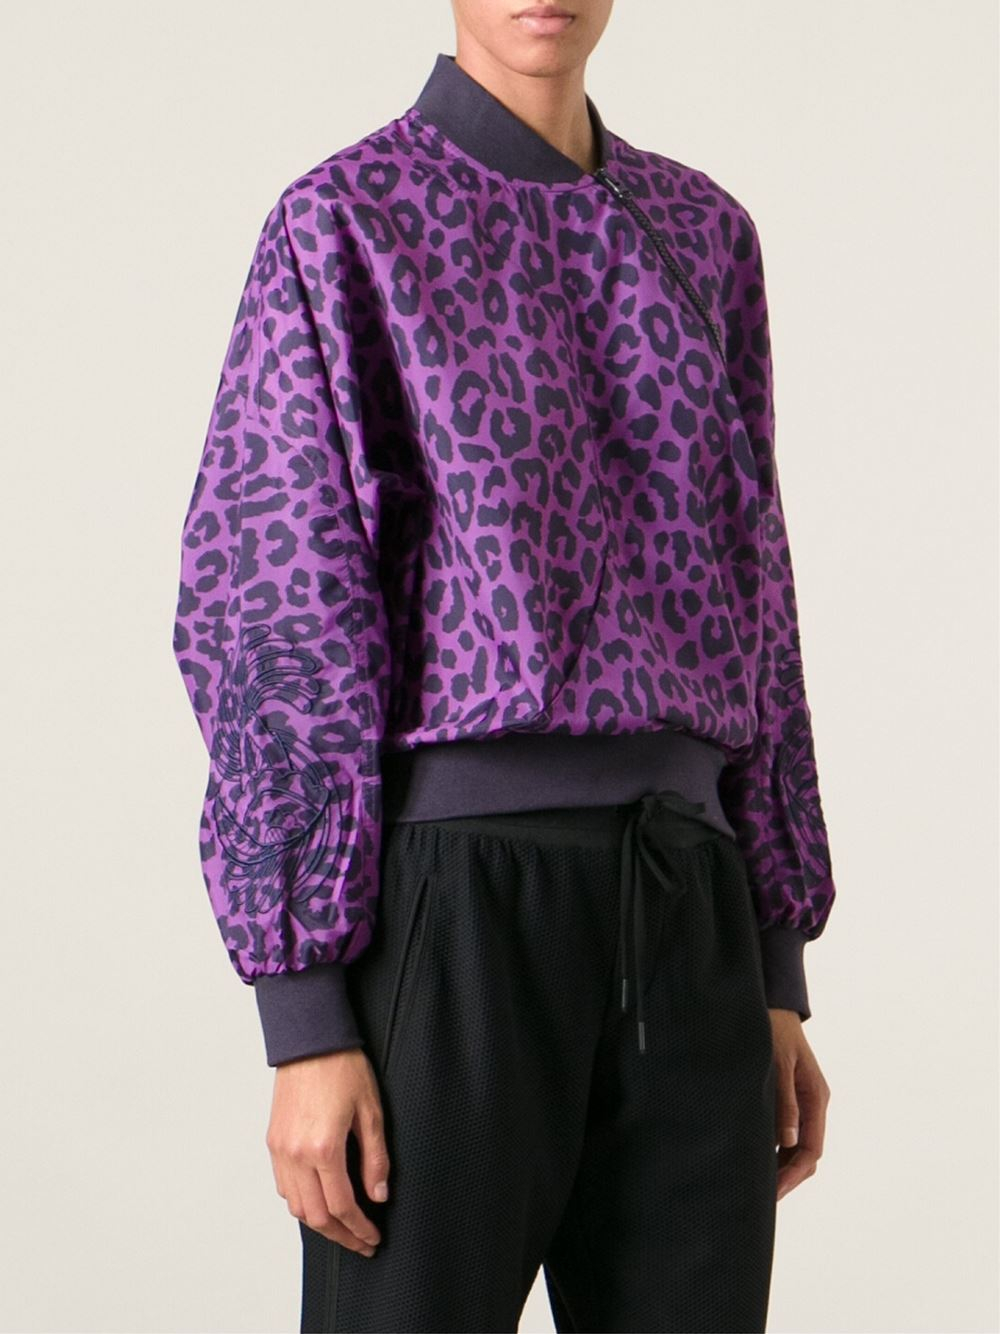 adidas By Stella McCartney Leopard Print Sport Jacket in Pink & Purple  (Purple) | Lyst